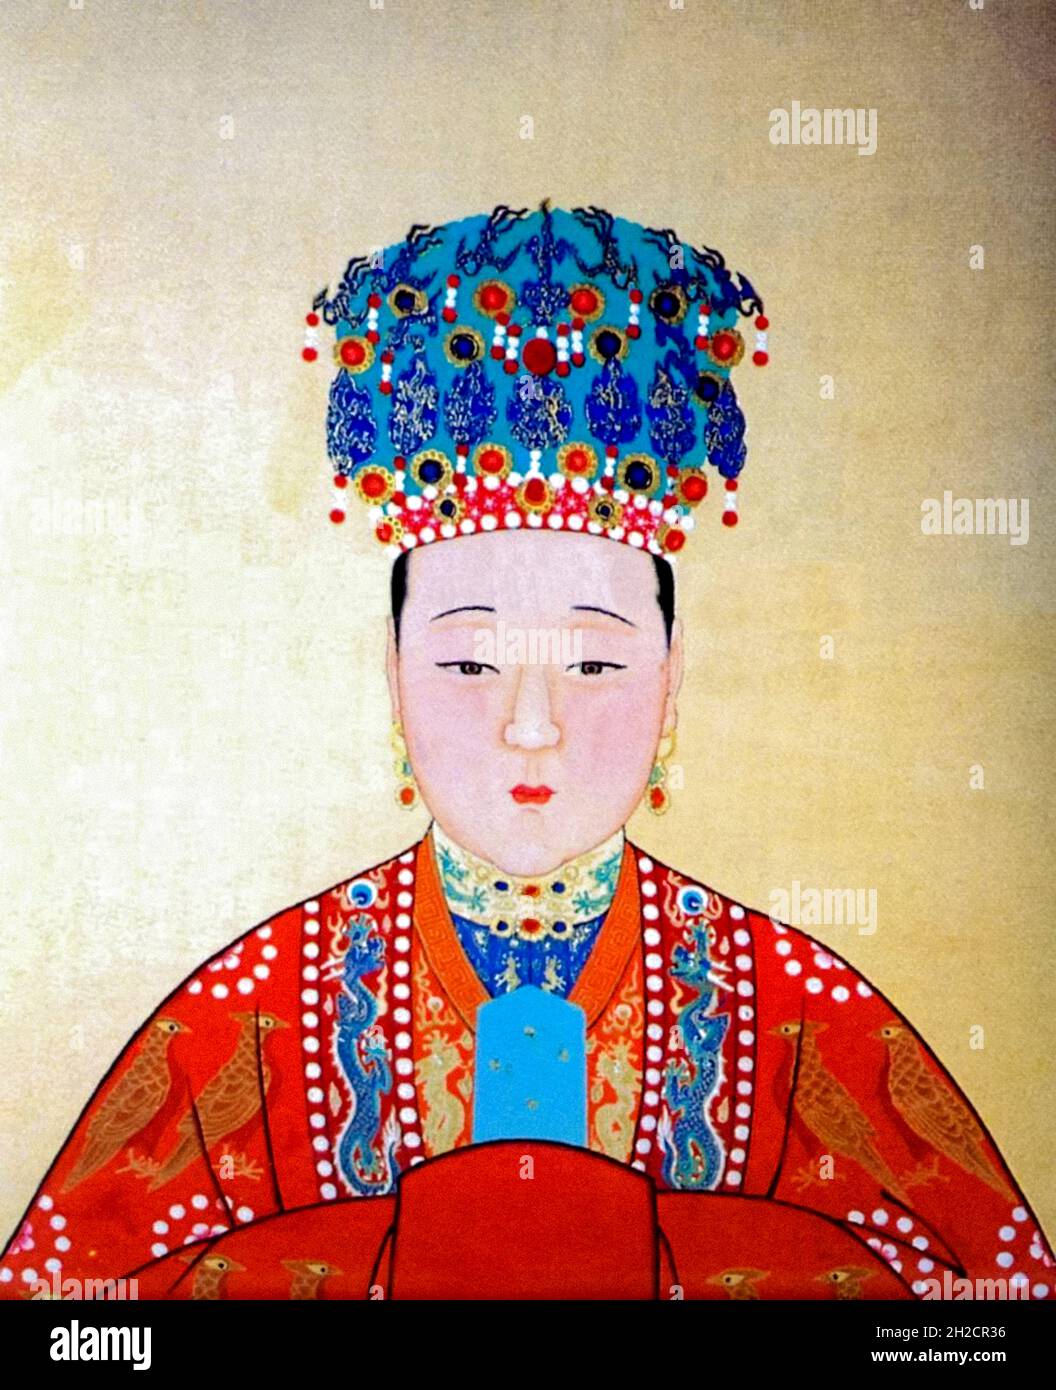 Imperatrice Xiaoduanwen (1599-1649) consorte cinese di Hong Taiji durante la dinastia Qing dal 1636 fino alla morte del marito nel 1643, dopo di che fu conosciuta come imperatrice. Foto Stock